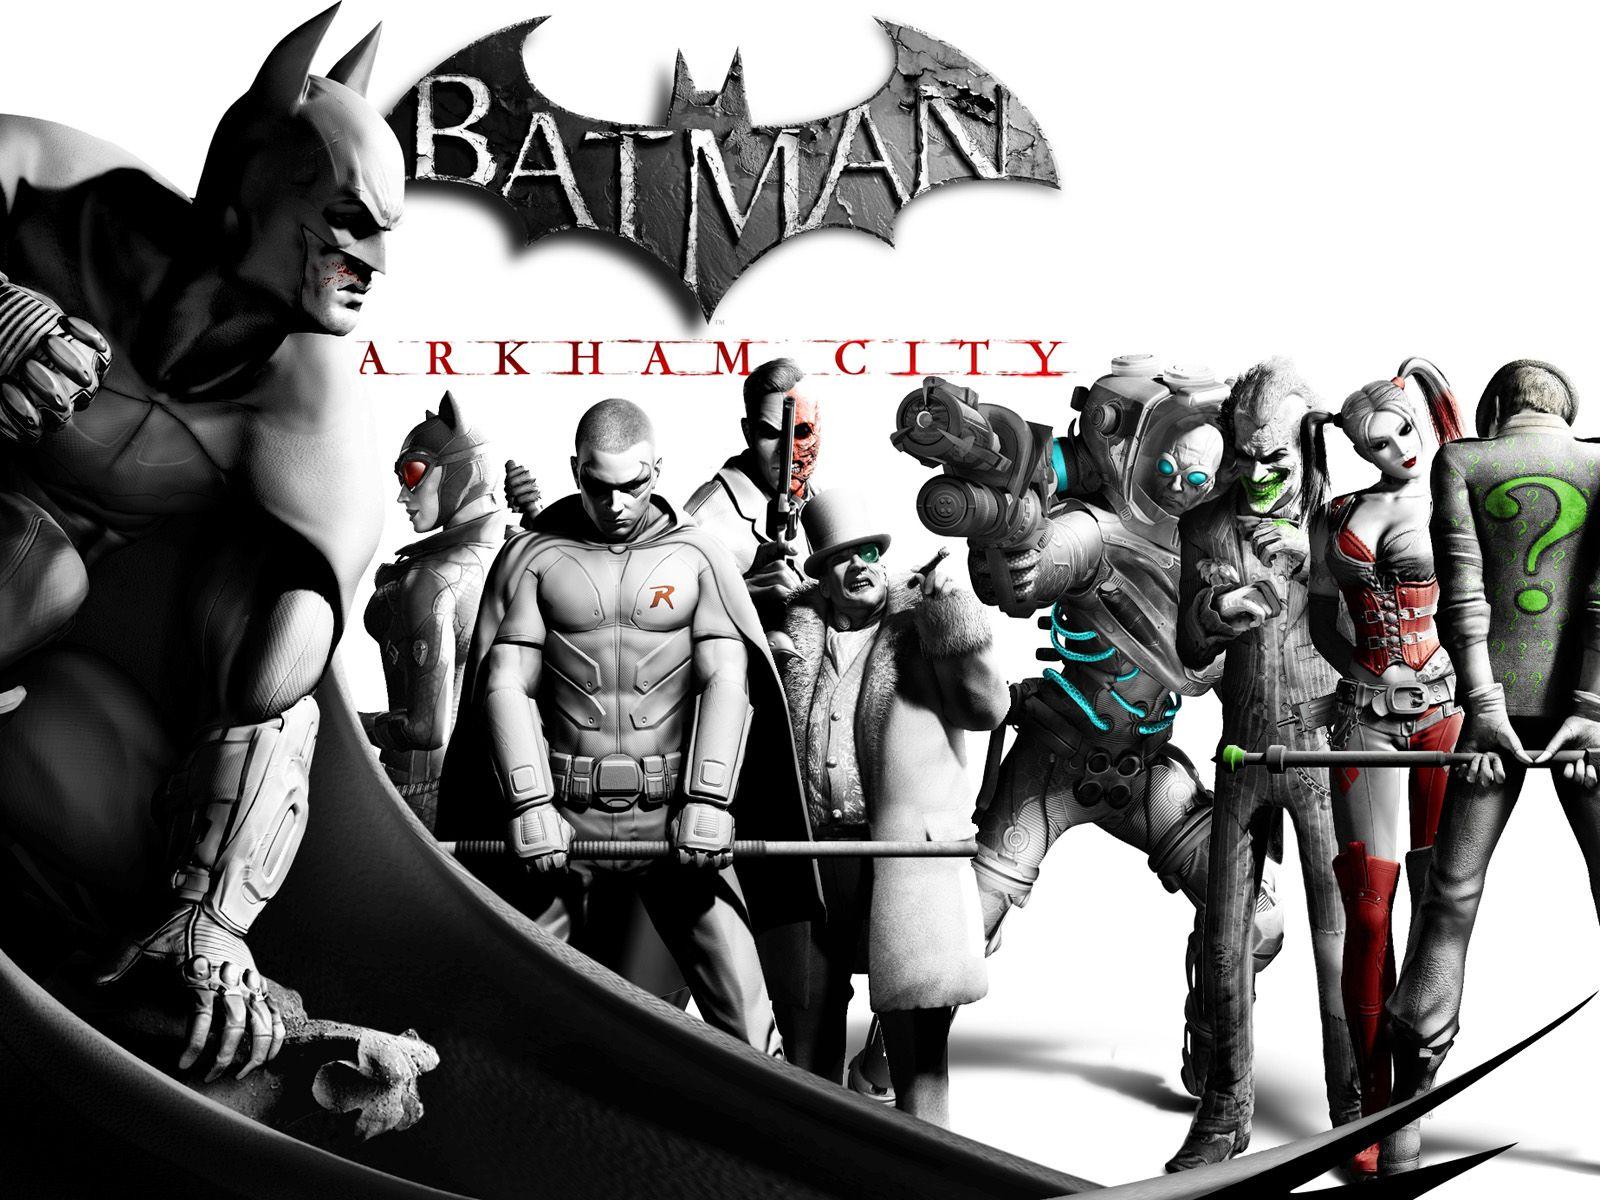 Batman Arkham City All Villains. Batman Arkham City Game